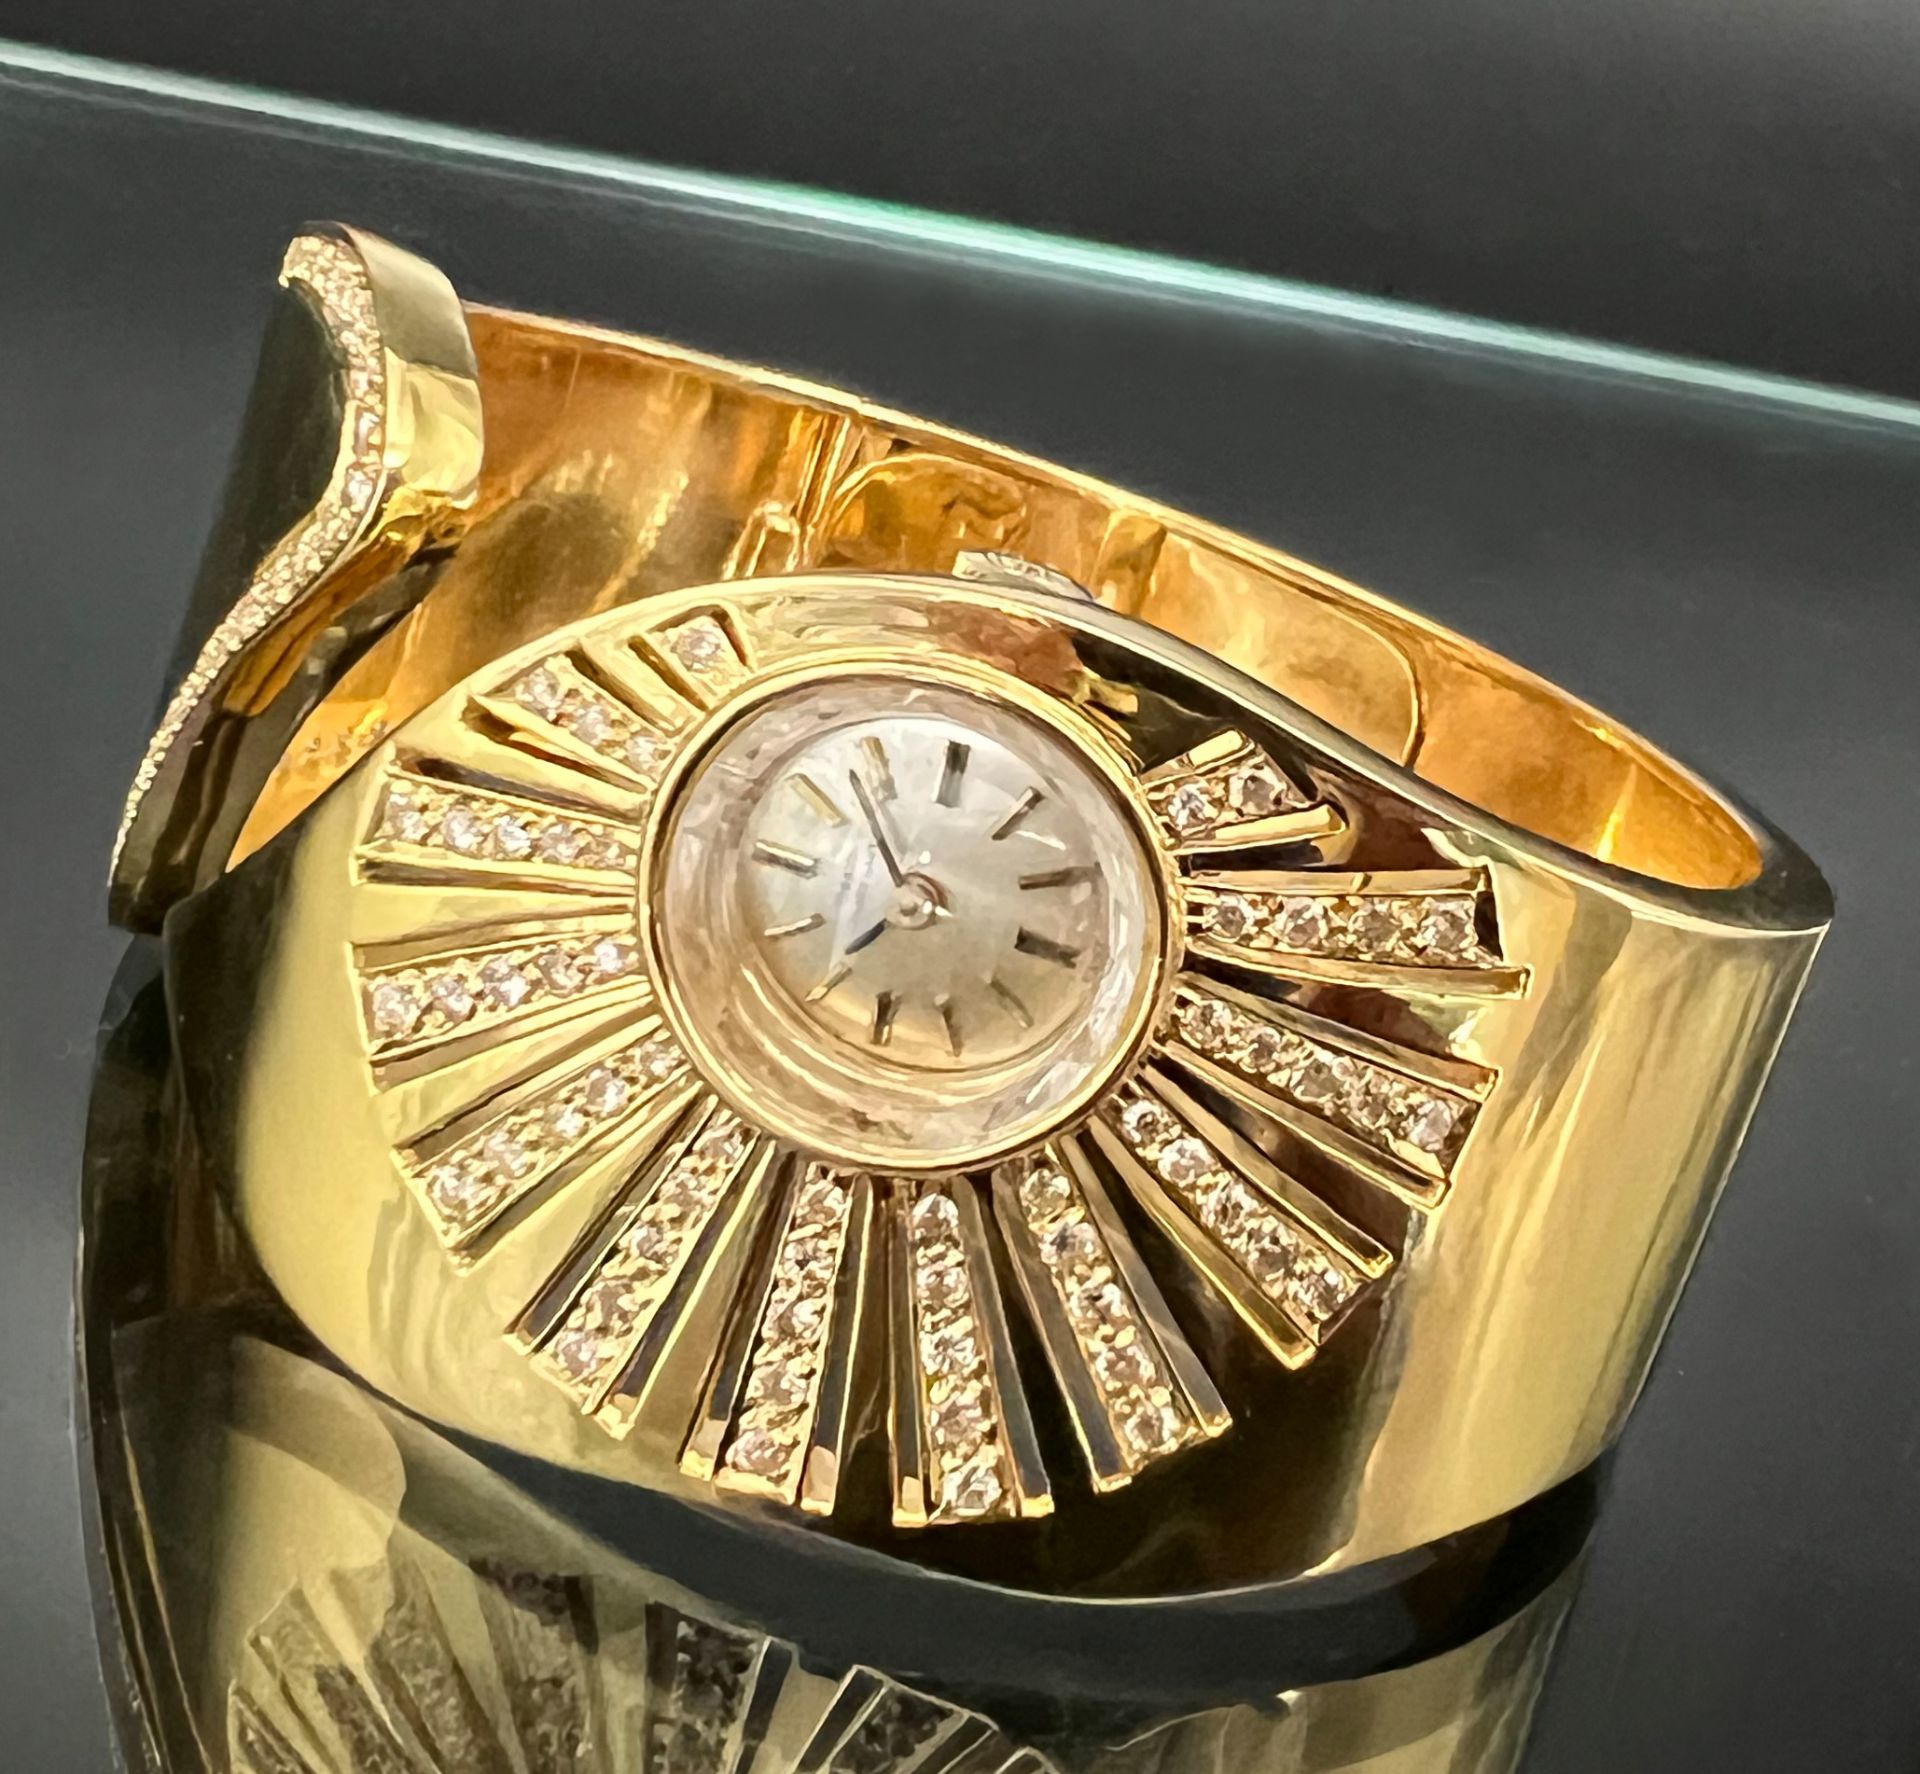 Damenarmbanduhr GIRARD-PERREGAUX. 750 Gelbgold mit Diamantbesatz.